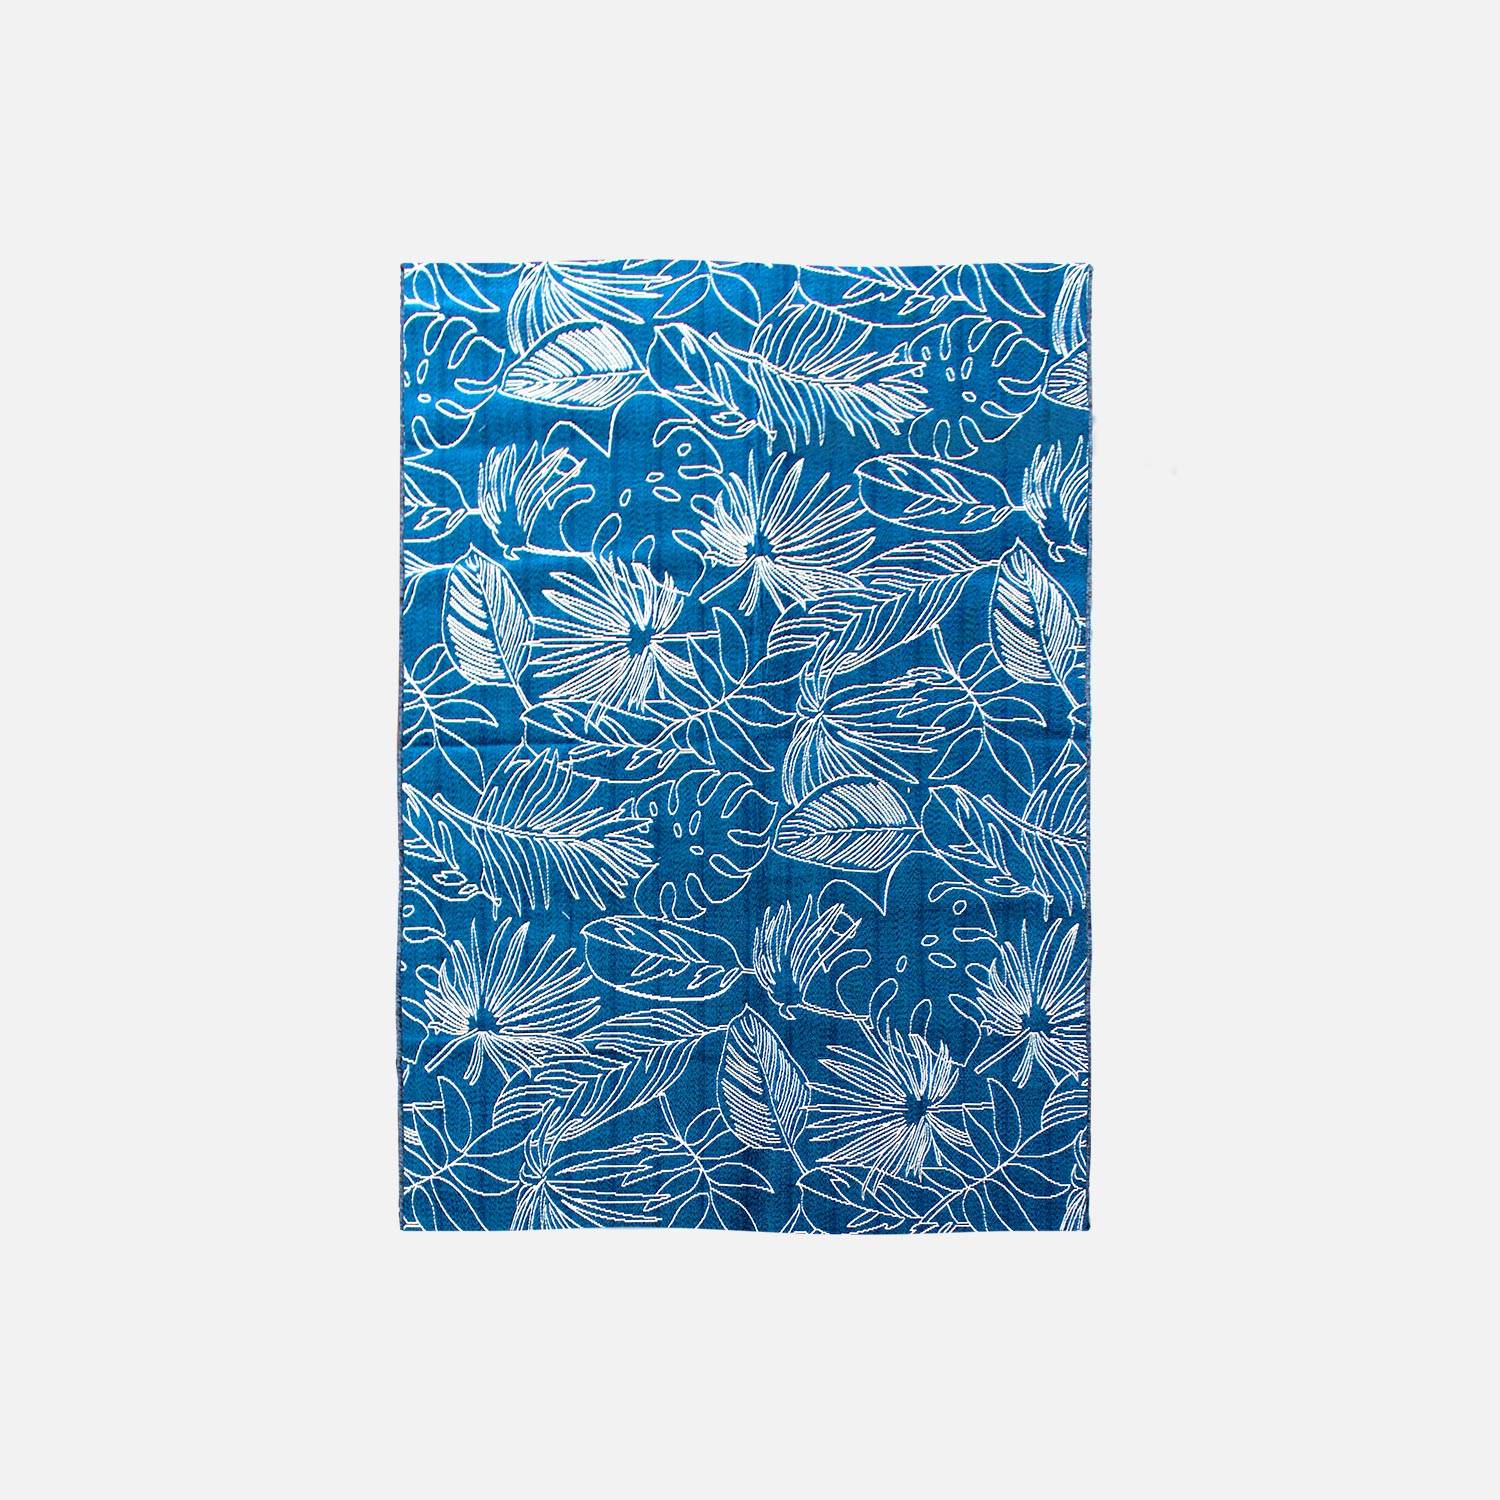 Teppich Outdoor/indoor 160 x 230 cm, Dichte 1,15 kg/m2, Entenblau mit exotischem Muster in Weiß, UV-behandelt, 4-Jahreszeiten Photo1